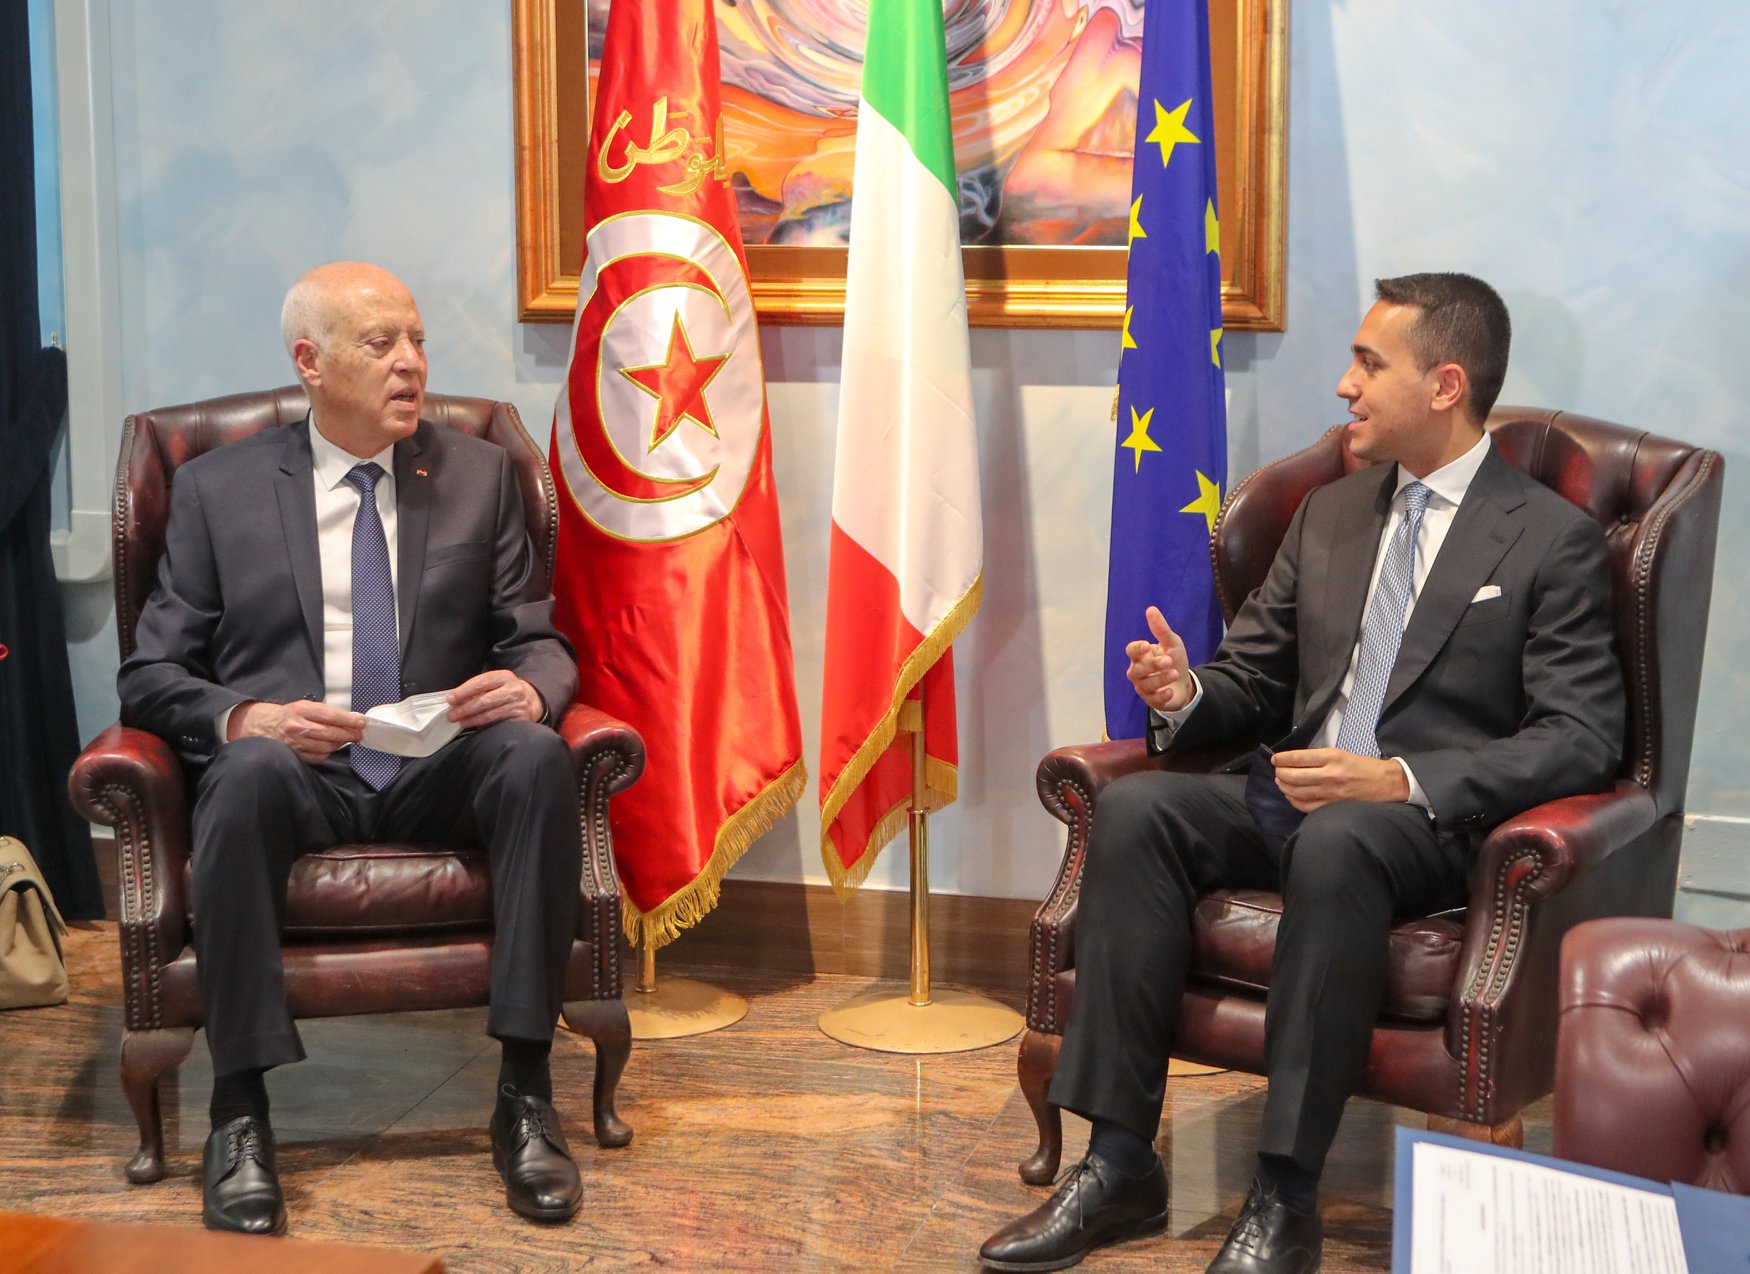 المنتدى التونسي للحقوق الإقتصادية والإجتماعية: زيارة سعيد إلى إيطاليا تفتقر للشفافية